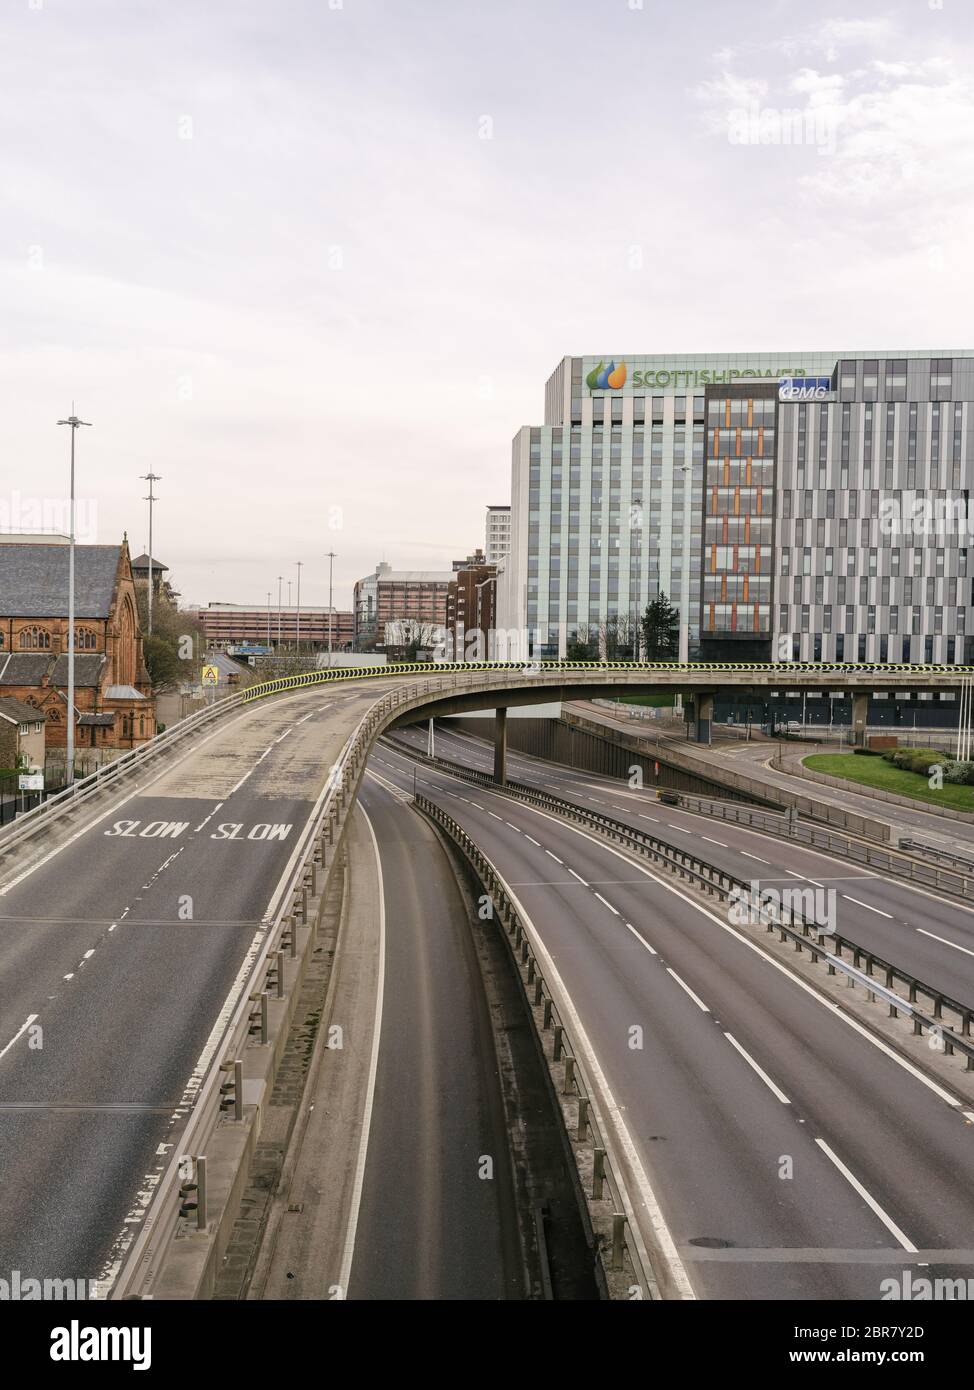 L'autoroute M8 et le pont de Kingston, généralement très fréquentés, traversent la ville de Glasgow et la rivière Clyde, ce qui illustre le fait que le gouvernement se respecte, les directives de distance sociale et les avis de « séjour à domicile » lors de la pandémie du coronavirus. Banque D'Images